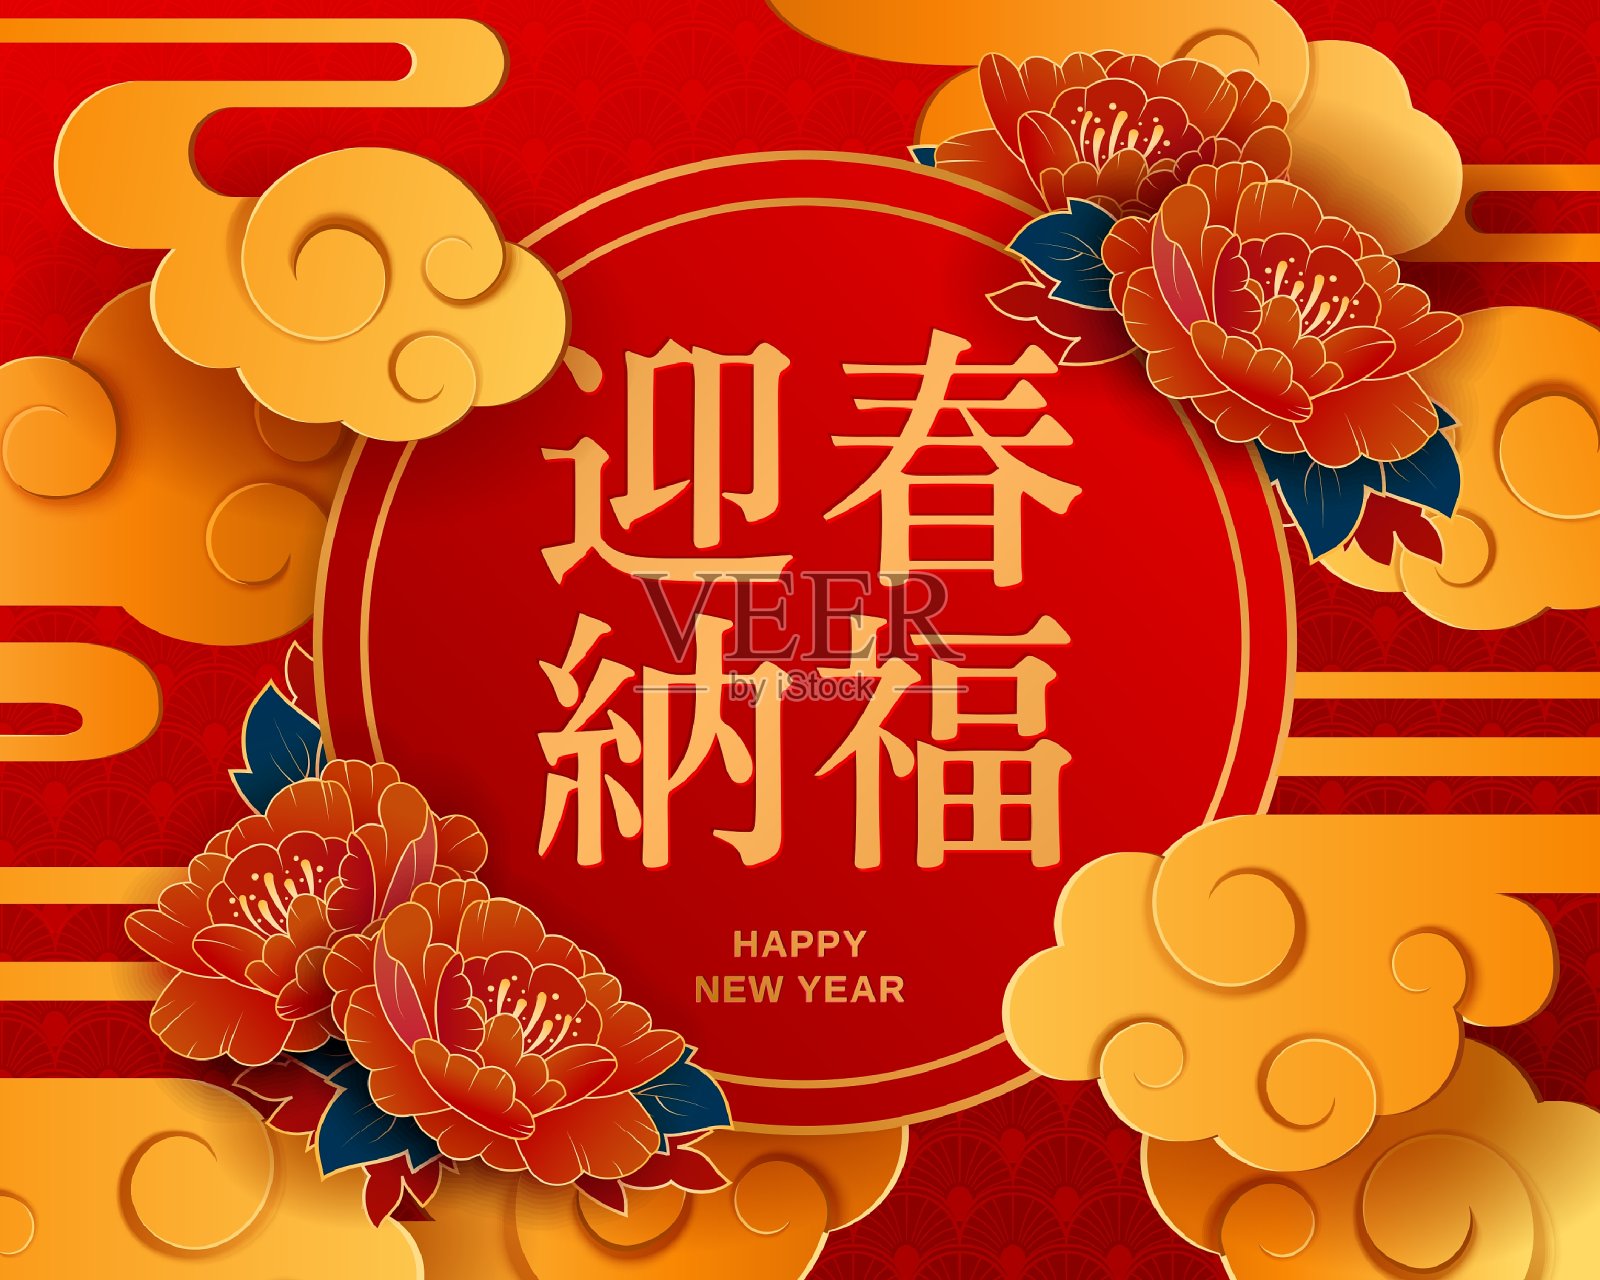 2021年春节传统红色贺卡。插图与传统的亚洲云和花在黄金分层剪纸艺术。书法符号翻译:吉祥如意。设计模板素材